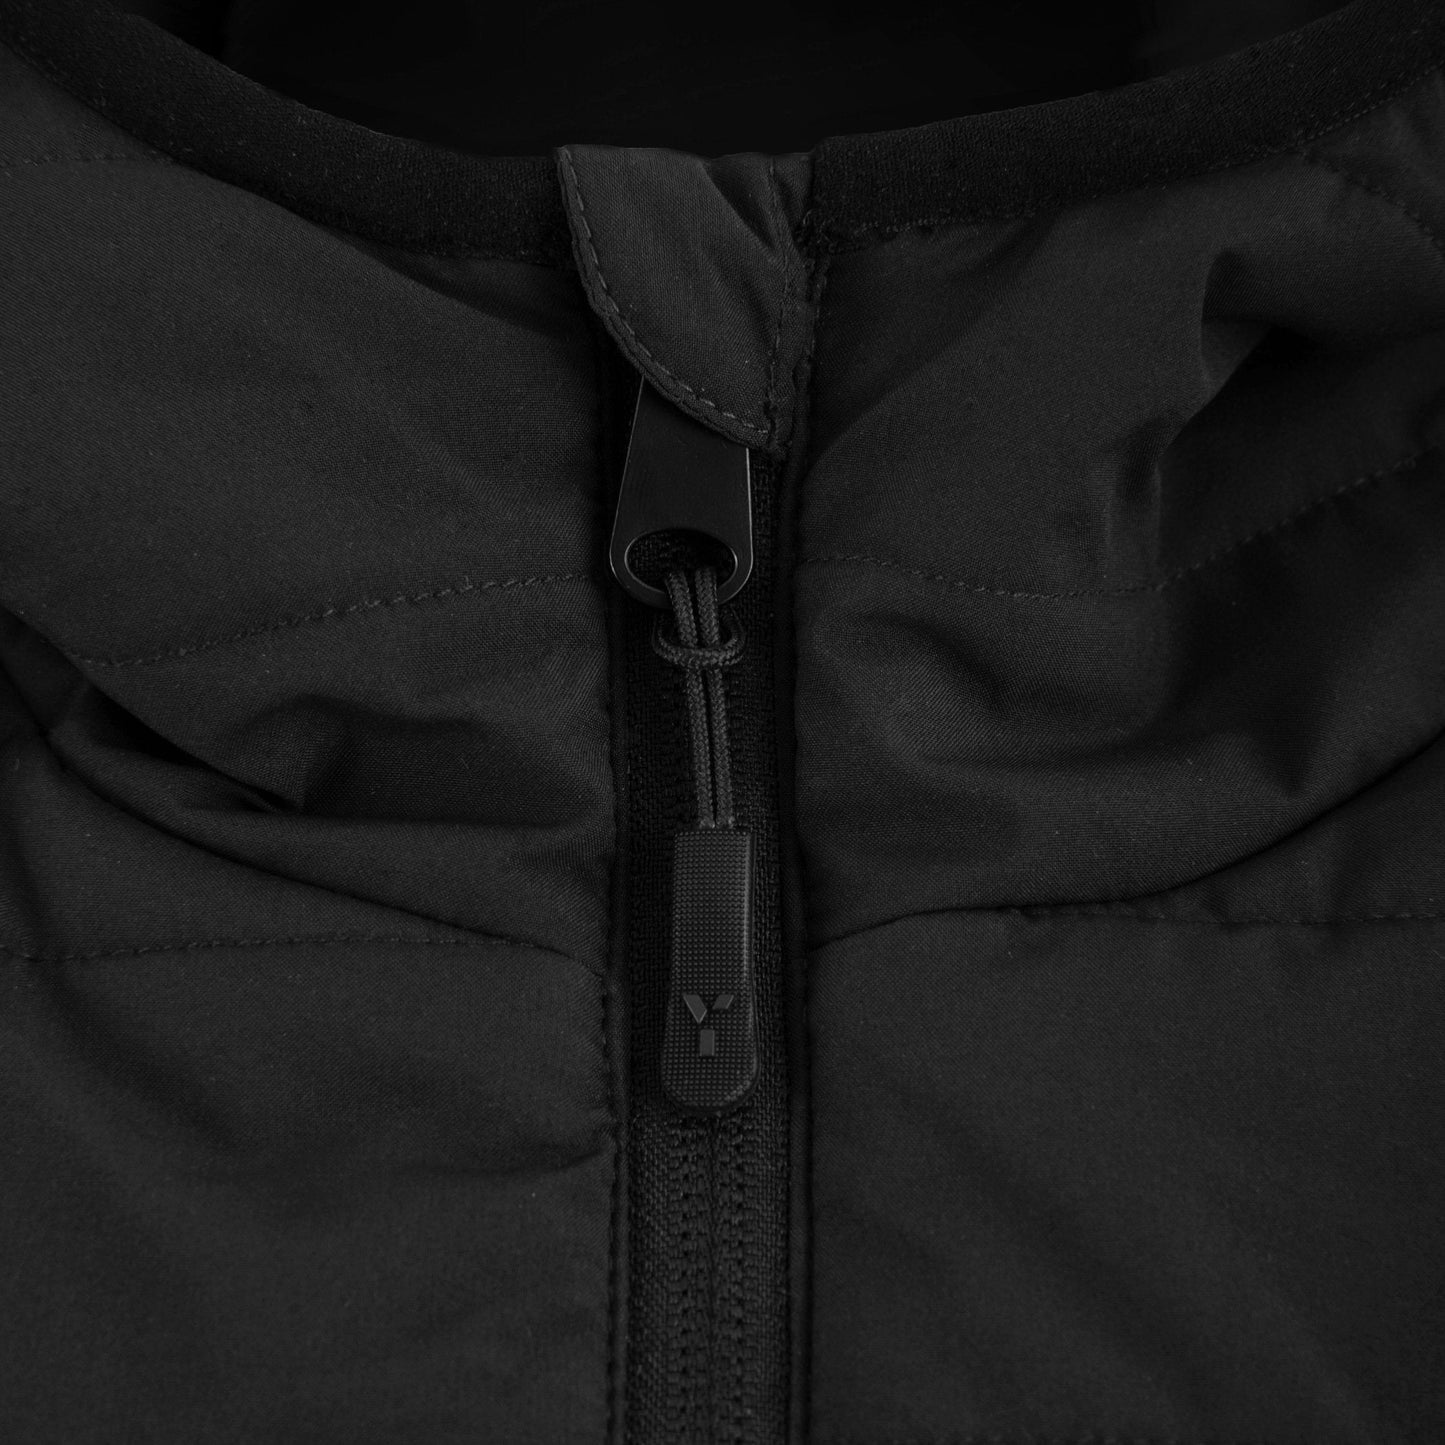 Bicester HC - Padded Jacket Unisex Black